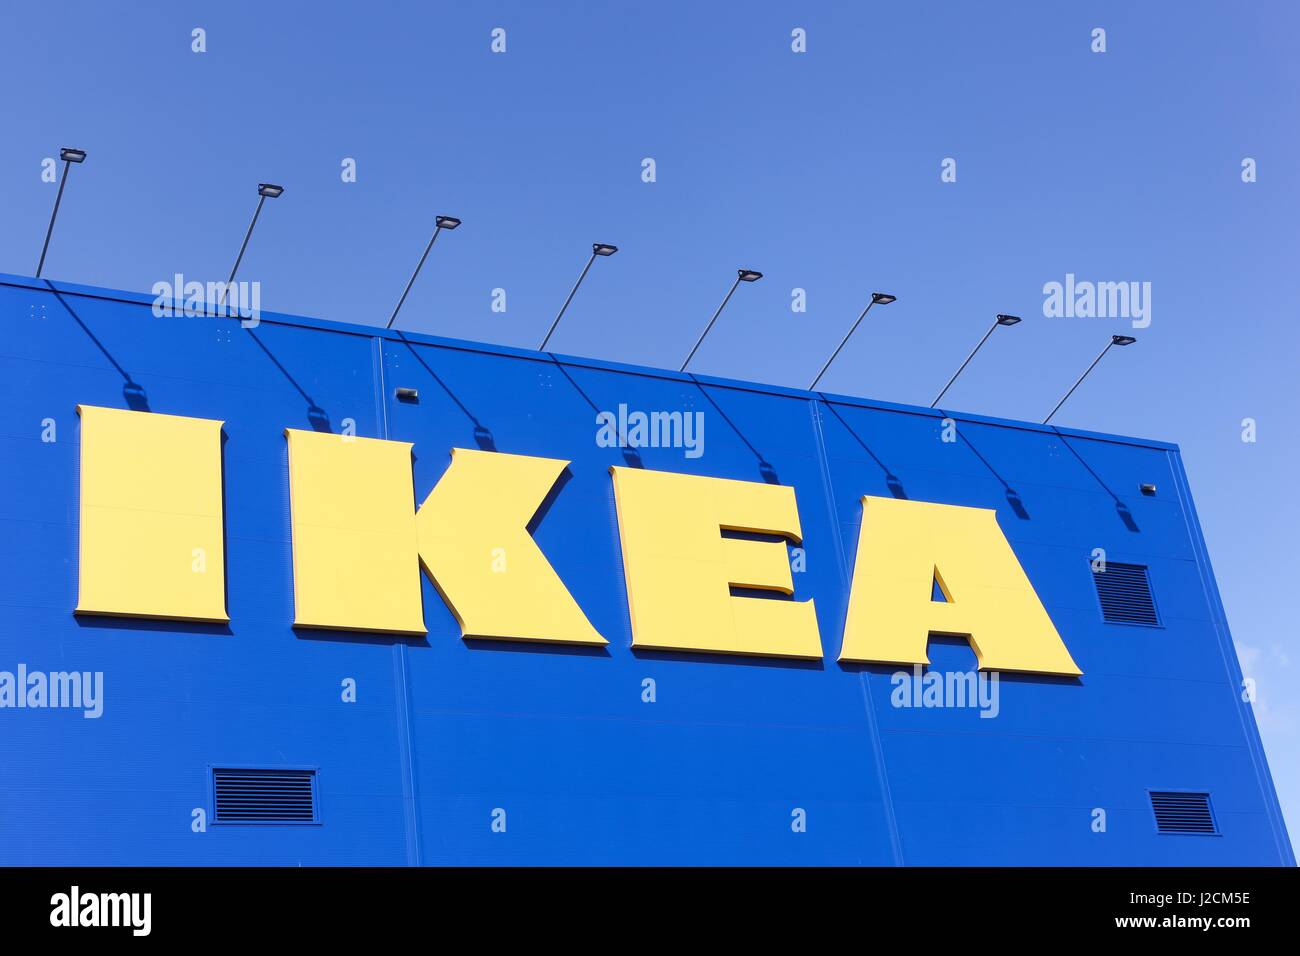 Odense, Dänemark - 2. April 2017: IKEA Einrichtungshaus. IKEA ist eine multinationale Unternehmensgruppe, Entwürfe, bereit-zu-zusammenbauen Möbel verkauft Stockfoto